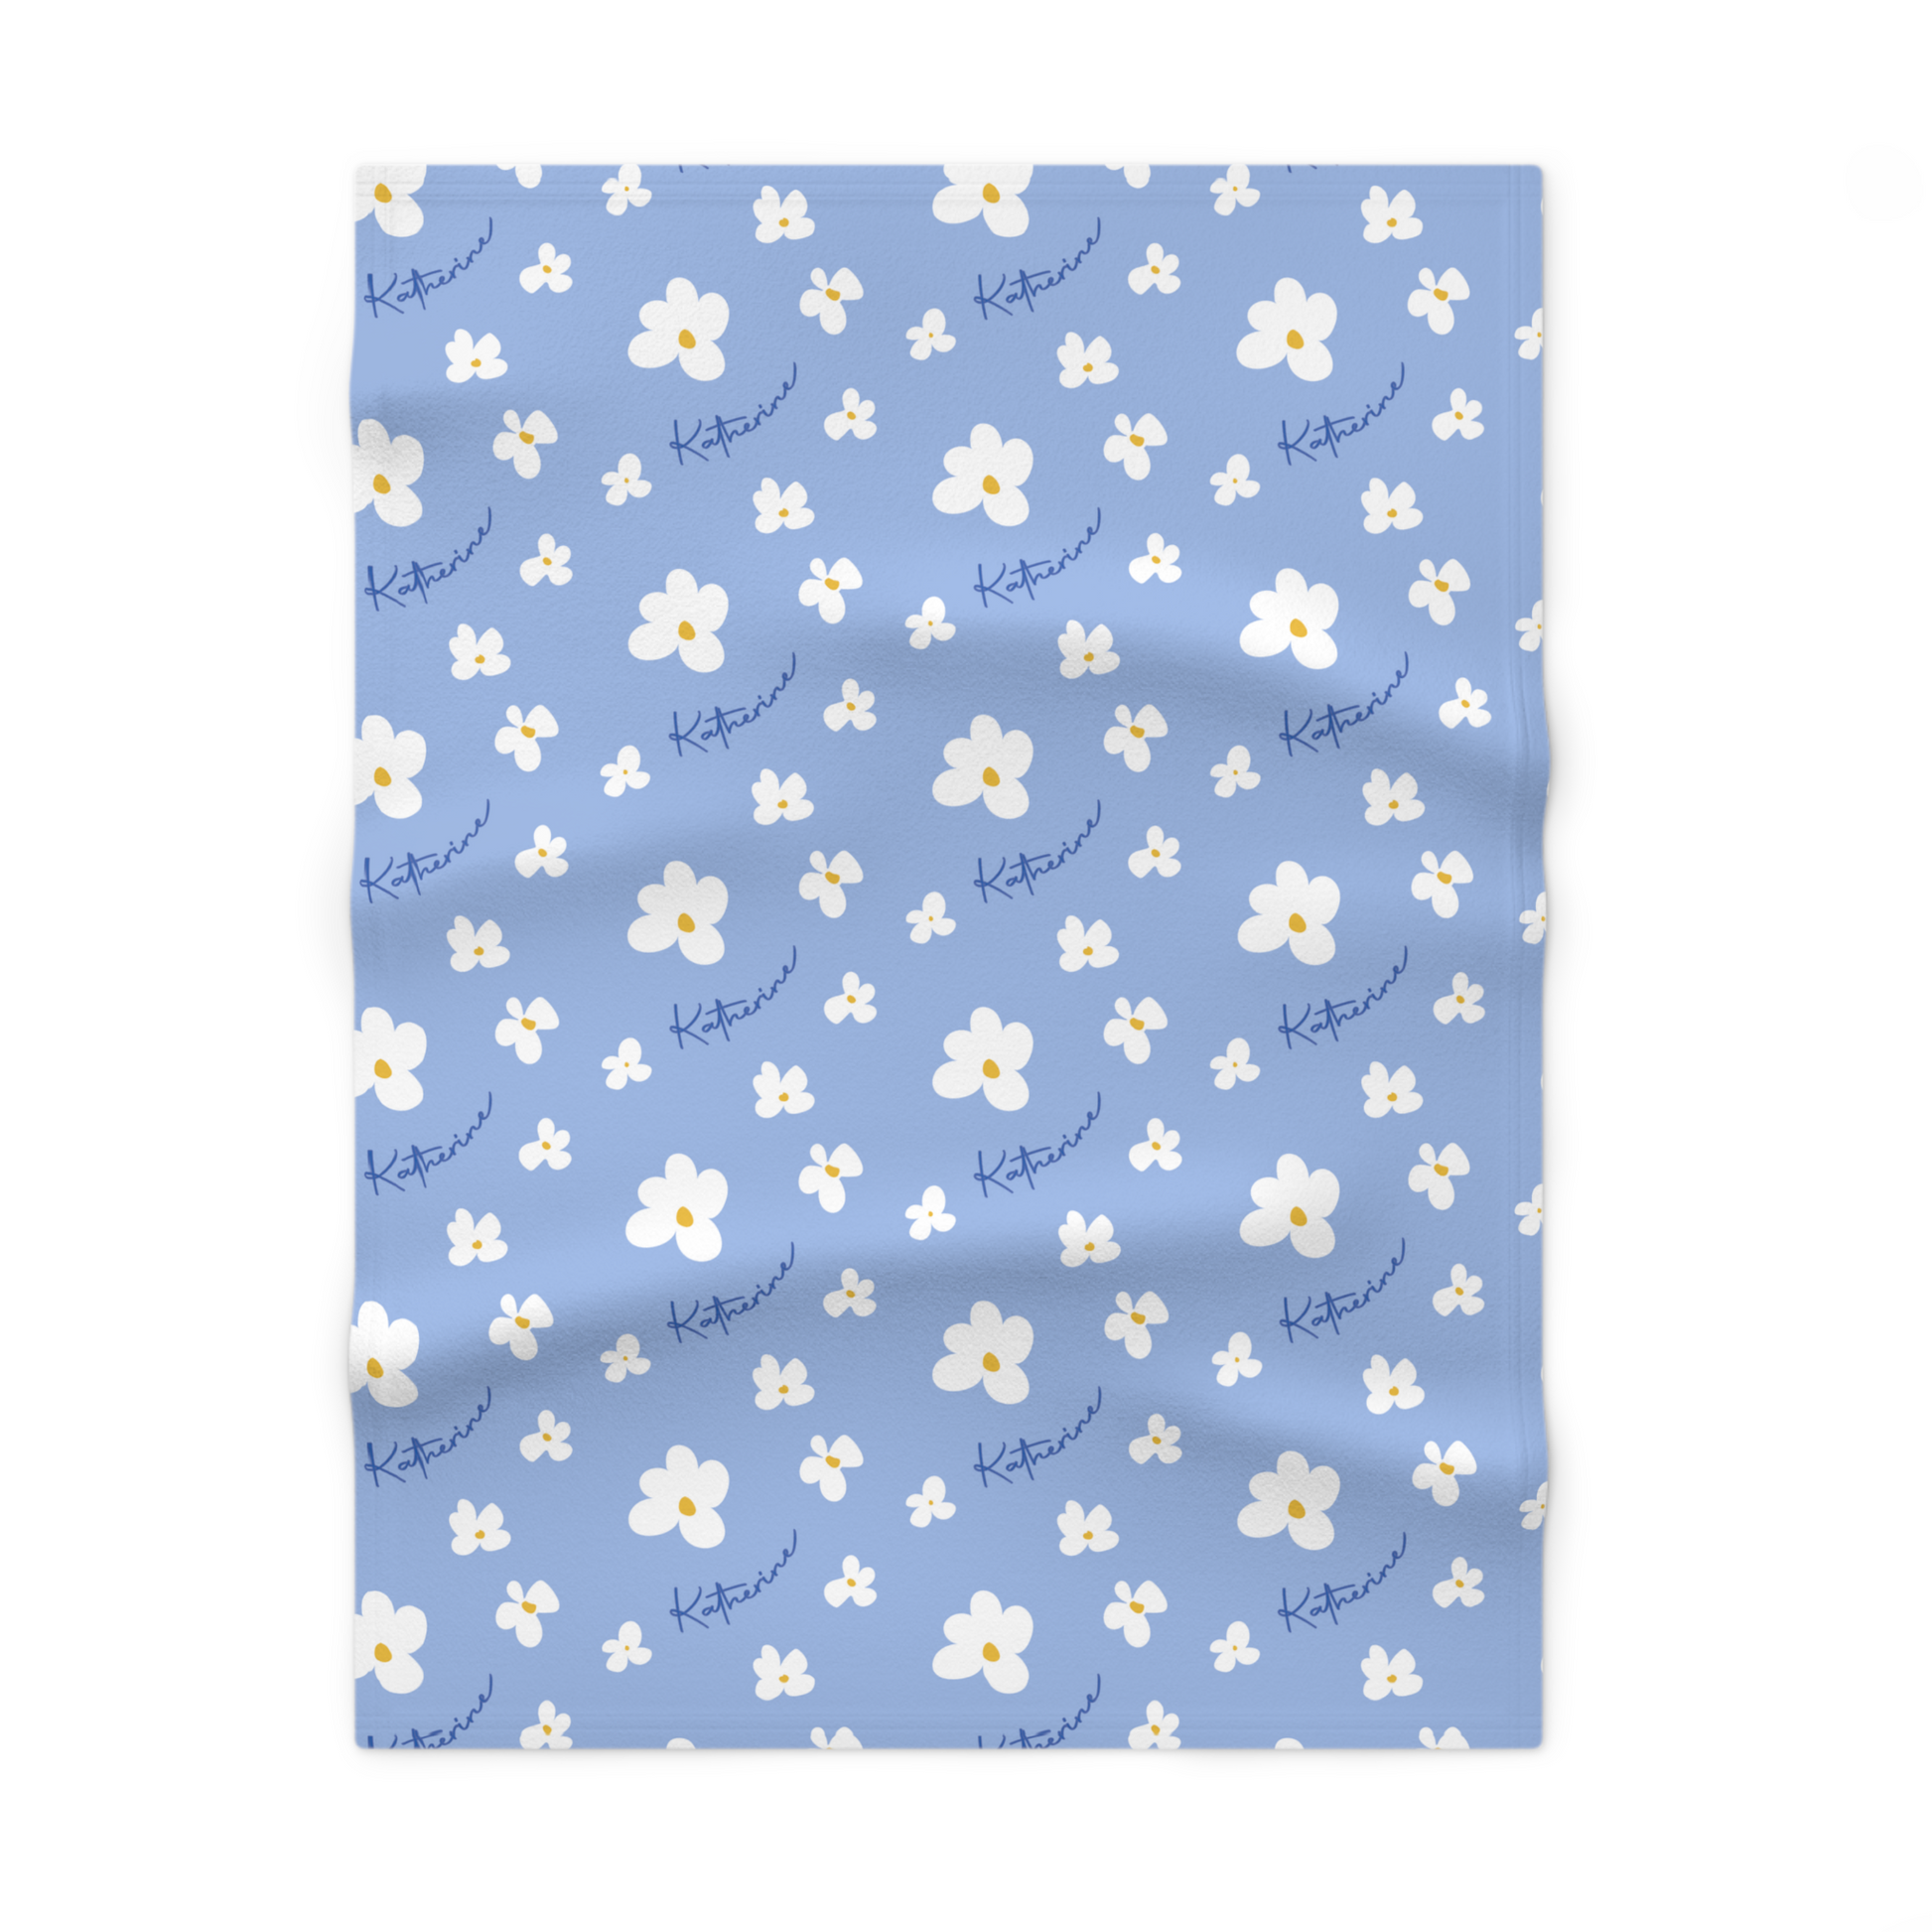 Fleece personalized baby blanket in blue daisy pattern laid flat